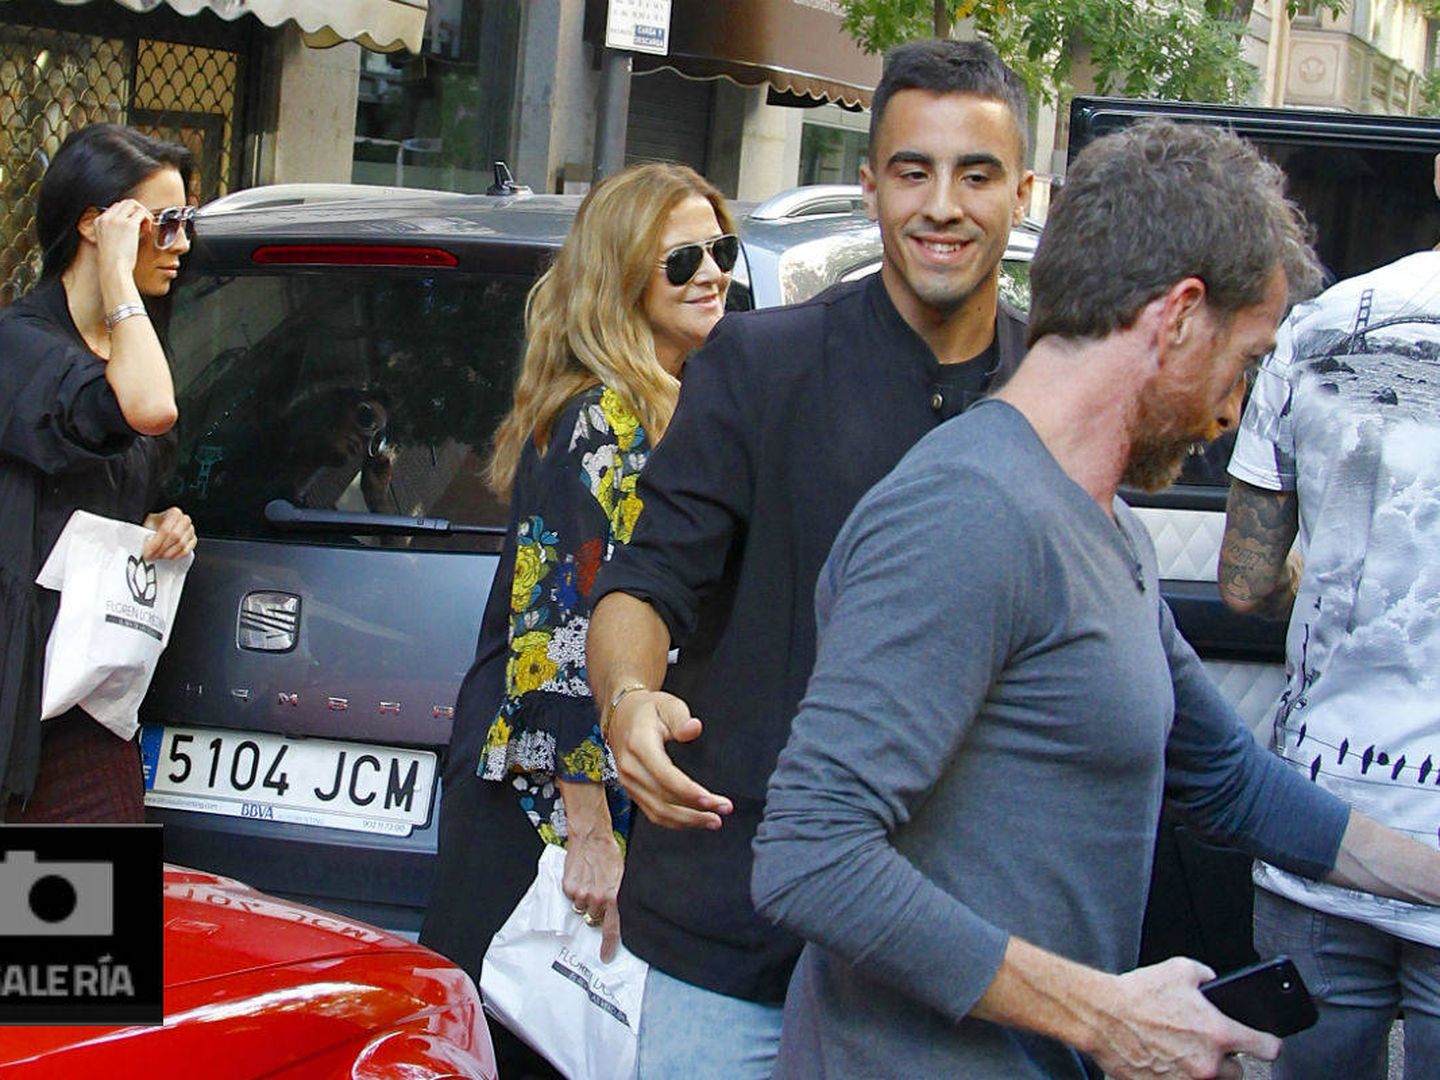 Vea todas las fotos de las dos parejas riéndose por Madrid. (Galería)